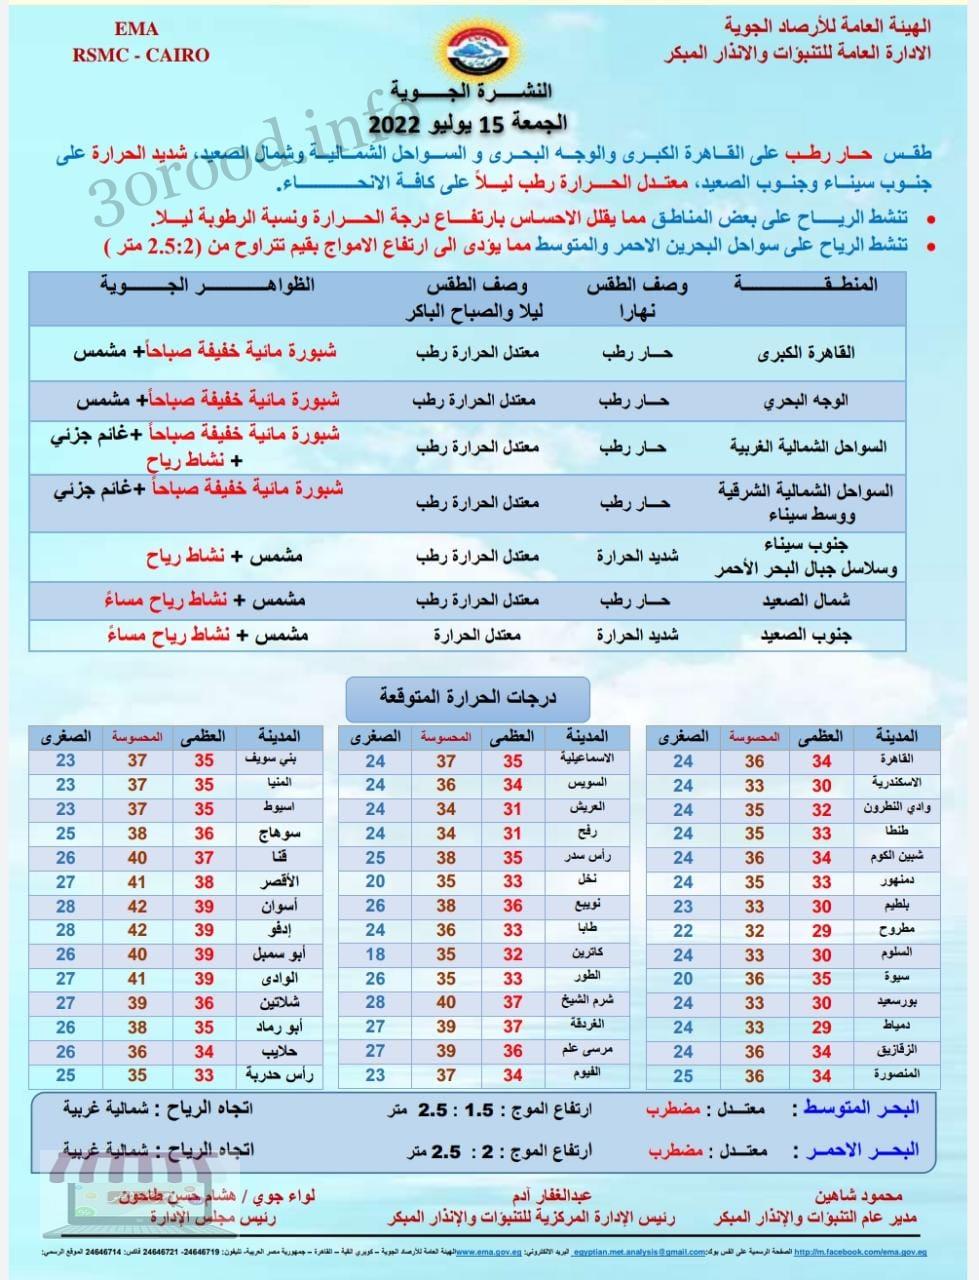 اخبار الطقس فى مصر الجمعة 15 يوليو 2022 النشرة الجوية فى مصر